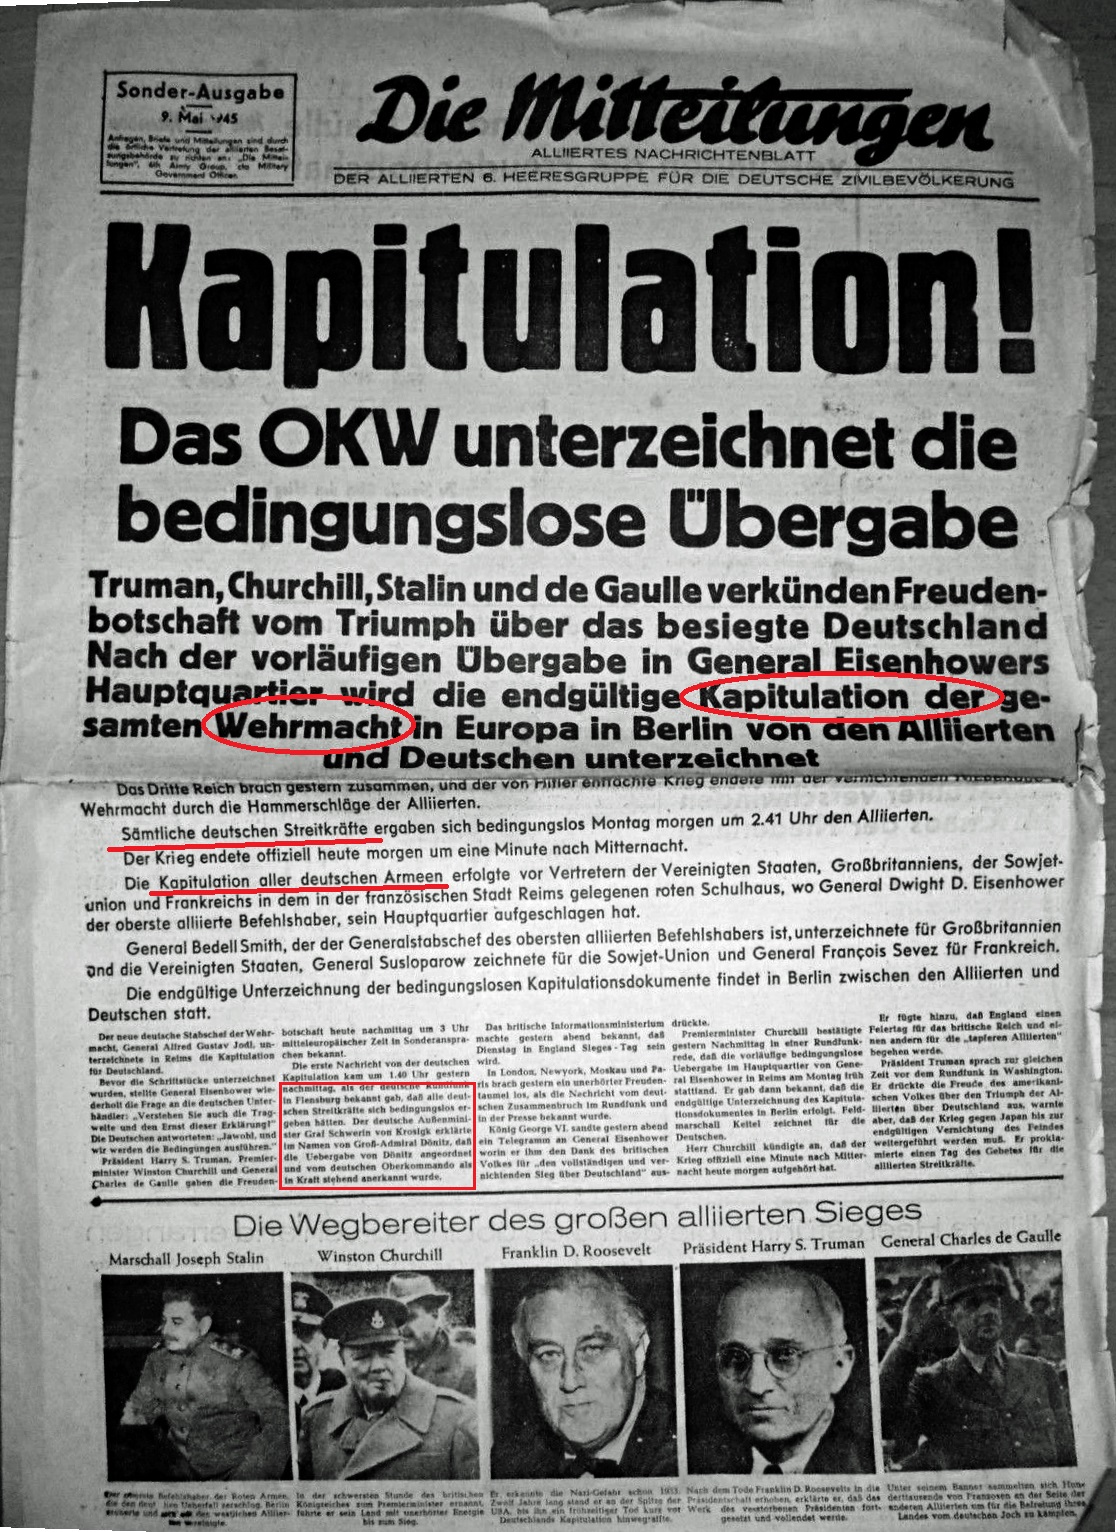 Kapitulation der Wehrmacht, 8. Mai 1945 - Zeitung der Sieger